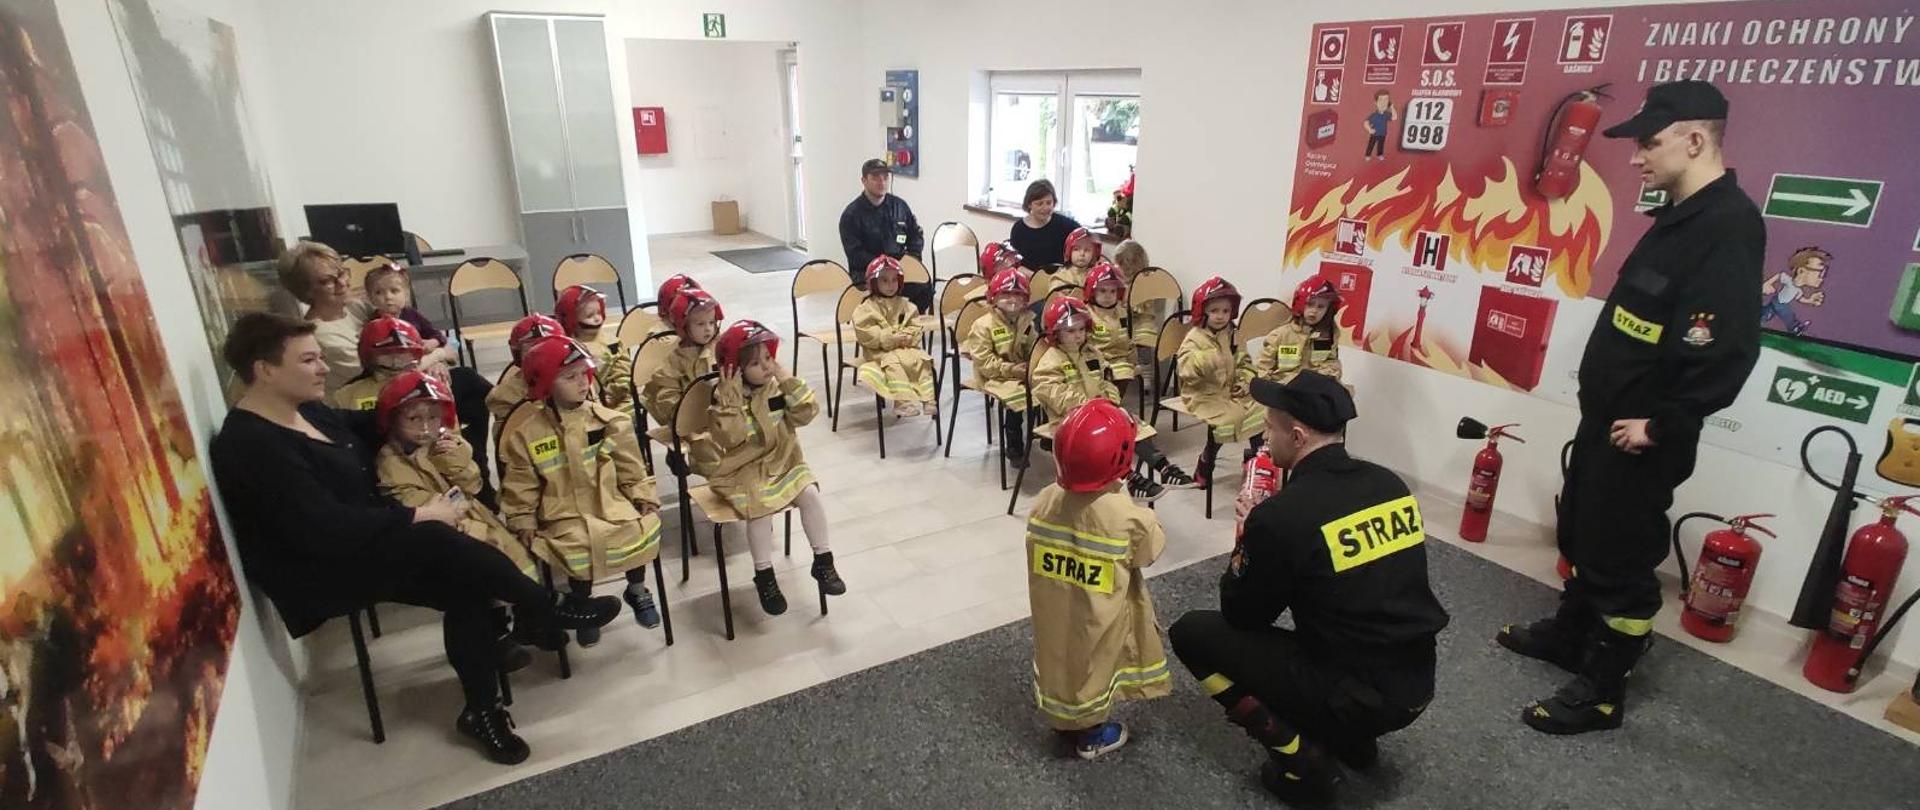 Dzieci w strojach strażackich w czasie zajęć w sali edukacyjnej. 